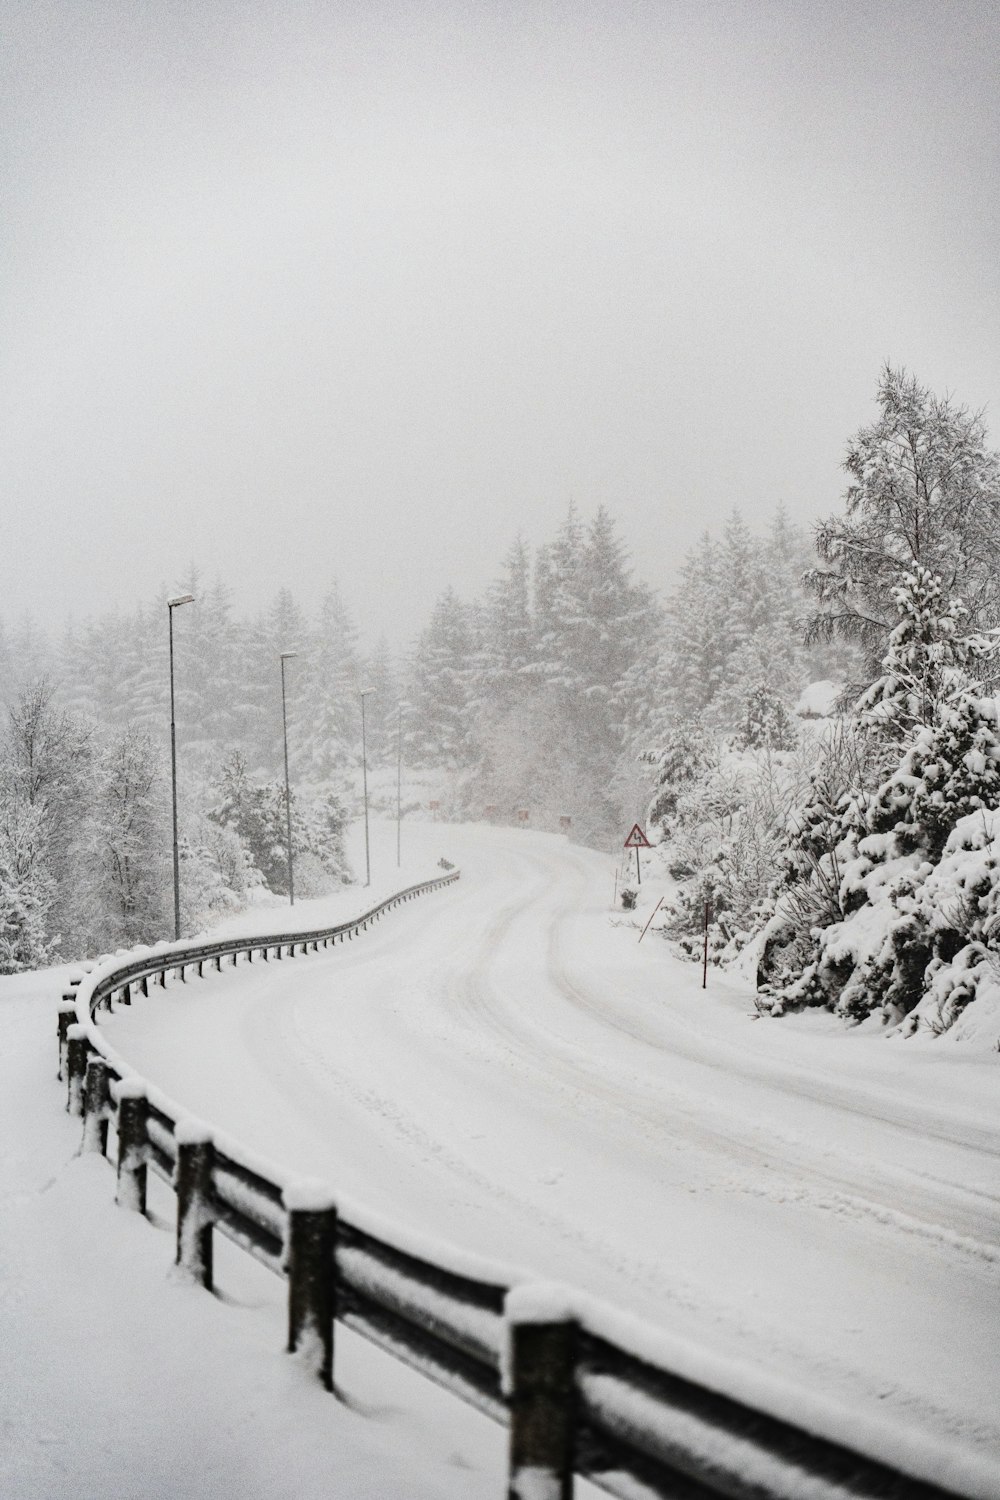 日中の雪に覆われた木々や道路